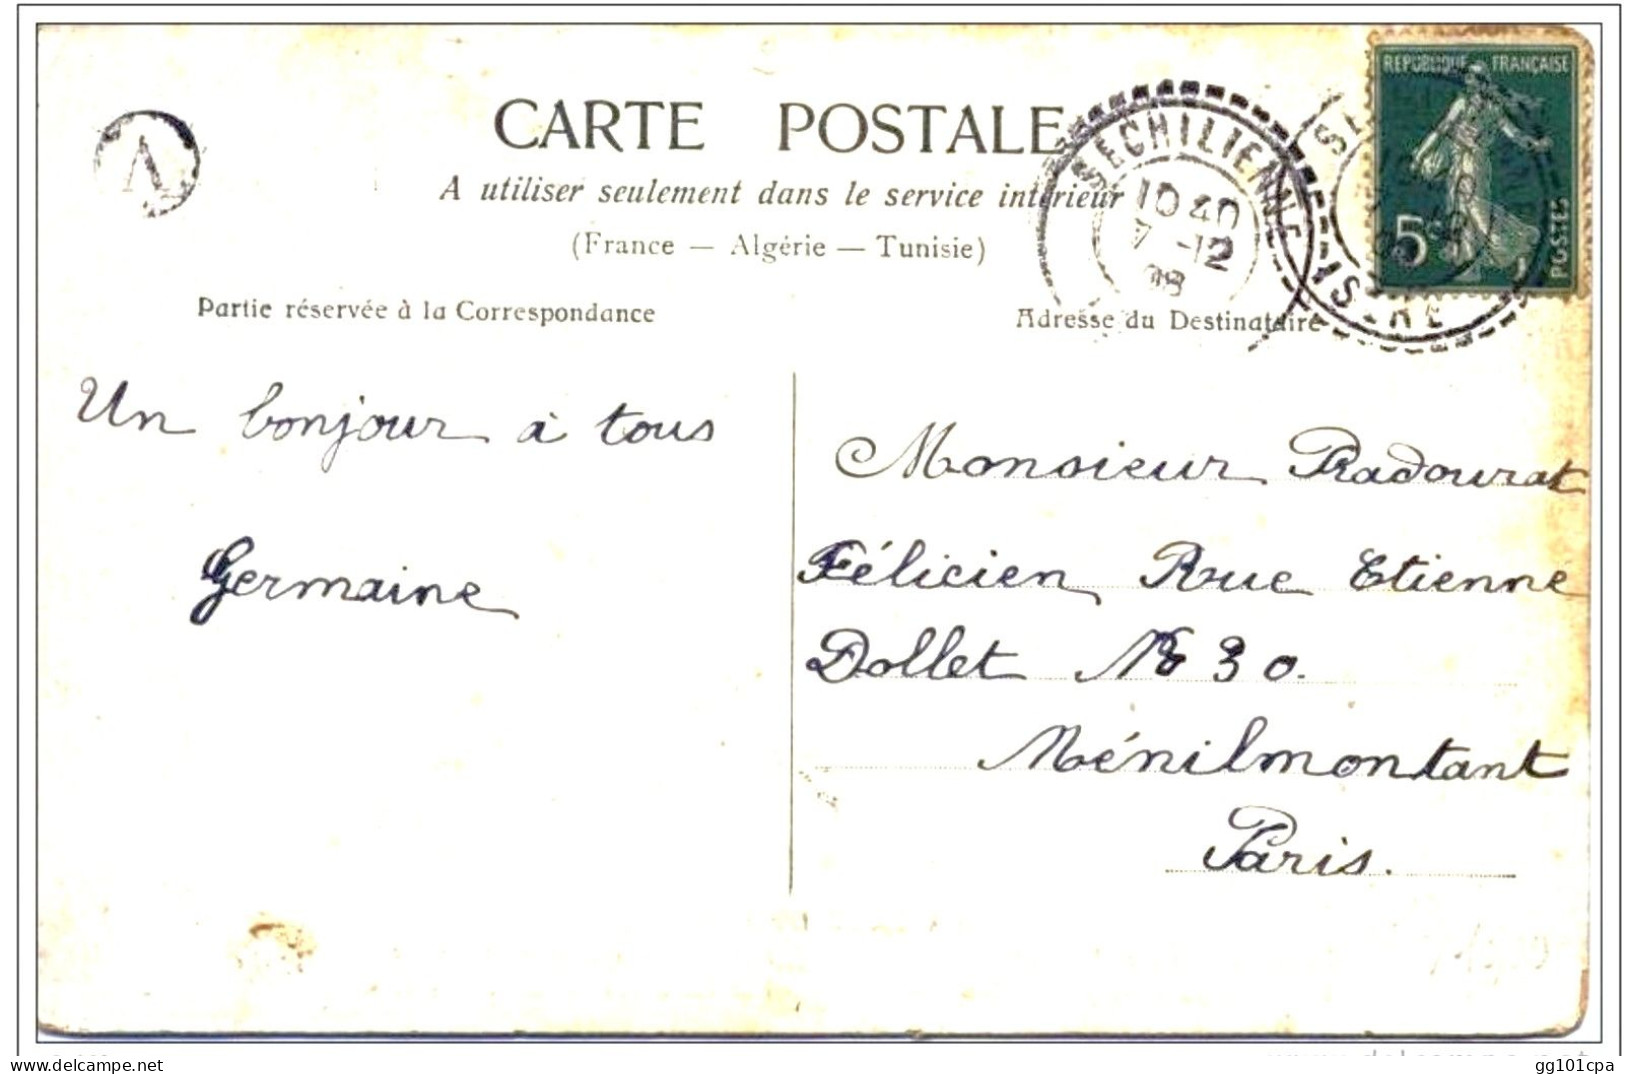 Cachet Perlé Boitier B2 "SECHILIENNE ISERE 1908" + Lettre Facteur A Cp Fantaisie - Paiement Par MANGOPAY Uniquement - Bolli Manuali